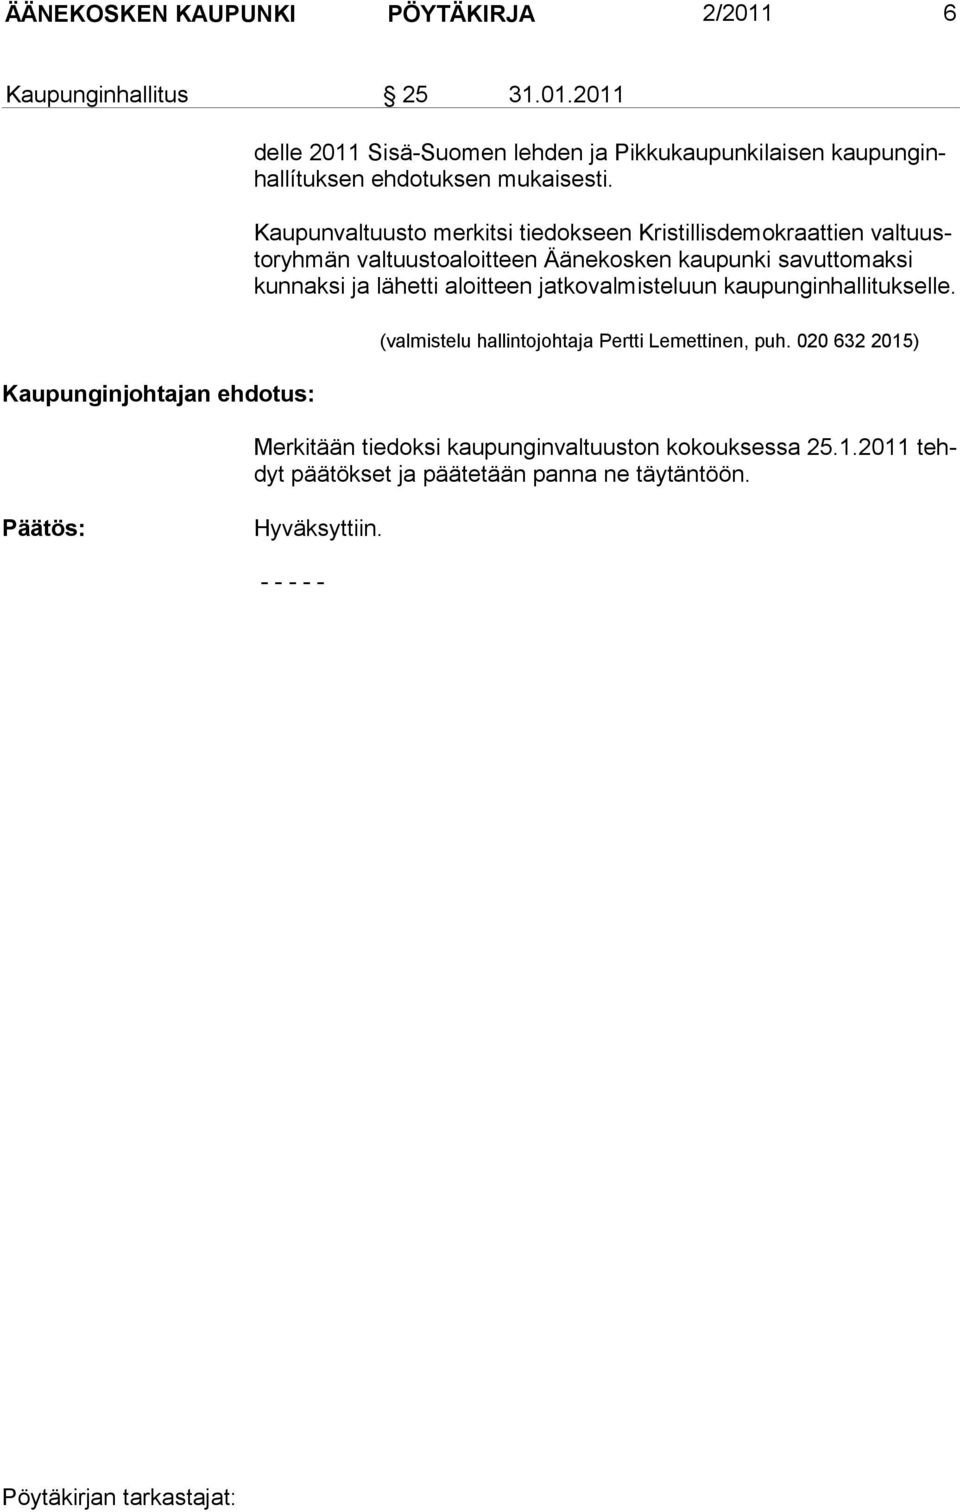 2011 Kaupunginjohtajan ehdotus: delle 2011 Sisä-Suomen lehden ja Pikkukaupunkilaisen kaupunginhallítuksen ehdotuksen mukaisesti.